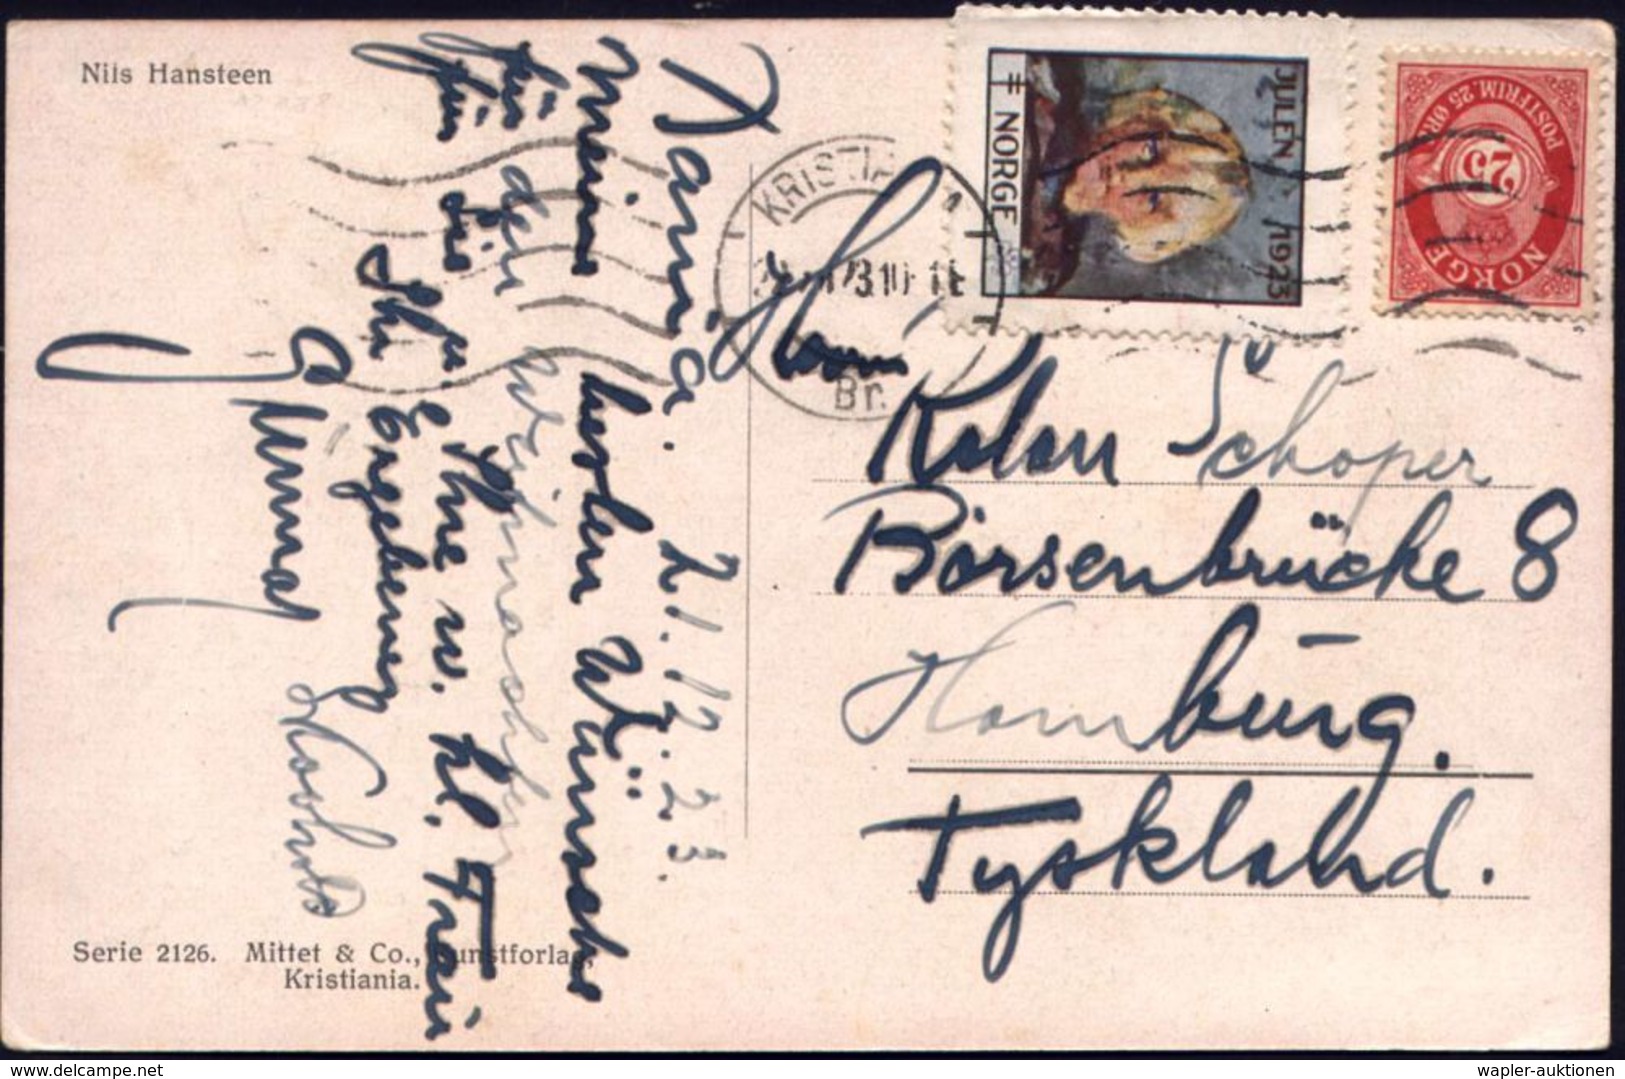 TUBERKULOSE / TBC-VORSORGE : NORWEGEN 1923 (22.12.) 25 Öre Freimarke + Tbc-Weihnachts-Spendenmarke "1923" (Kinderkopf) A - Maladies